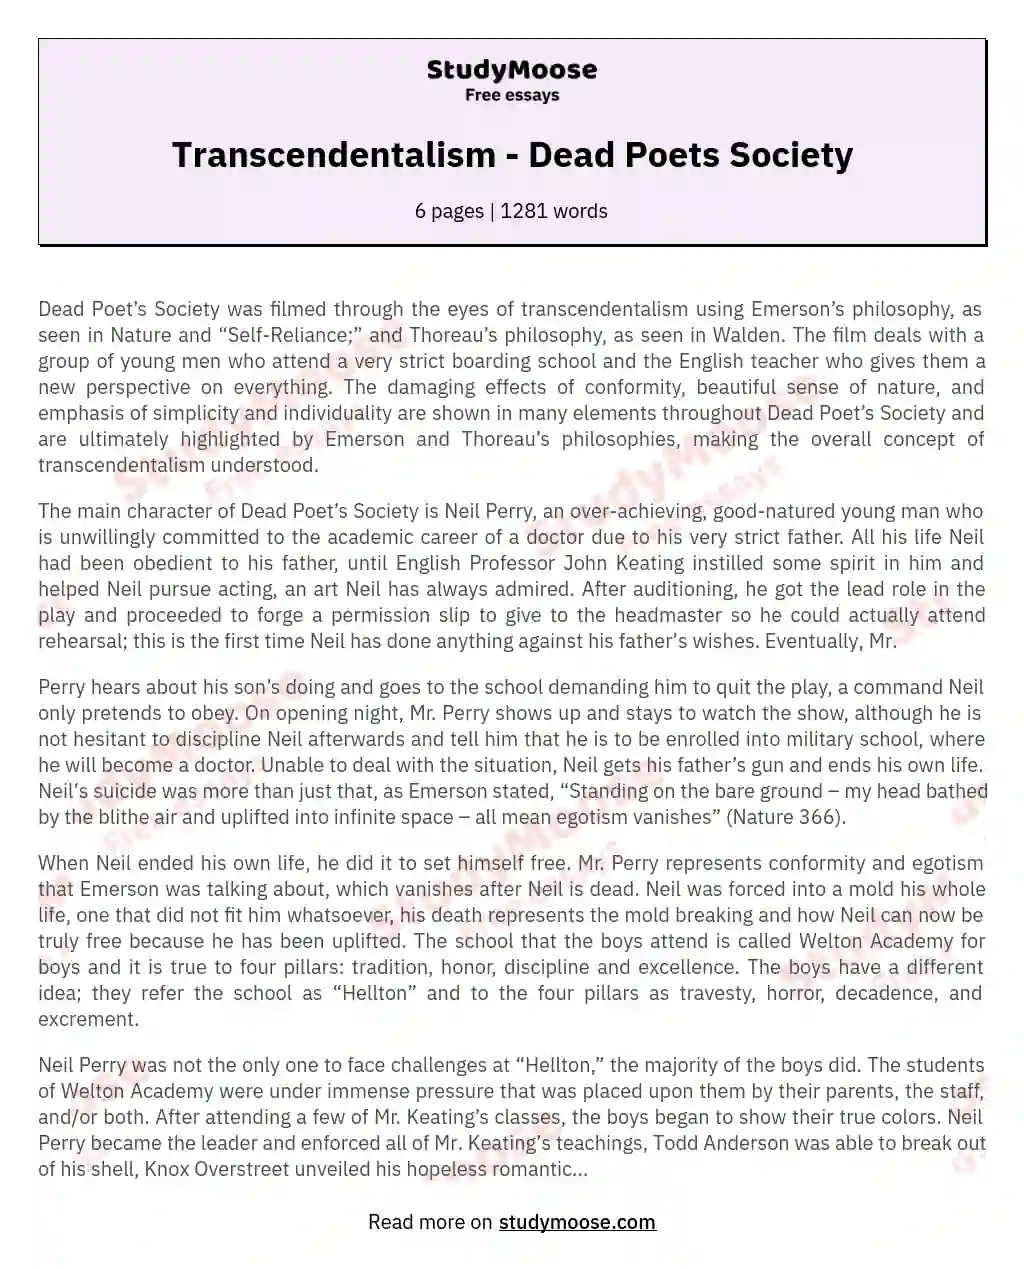 Transcendentalism - Dead Poets Society essay